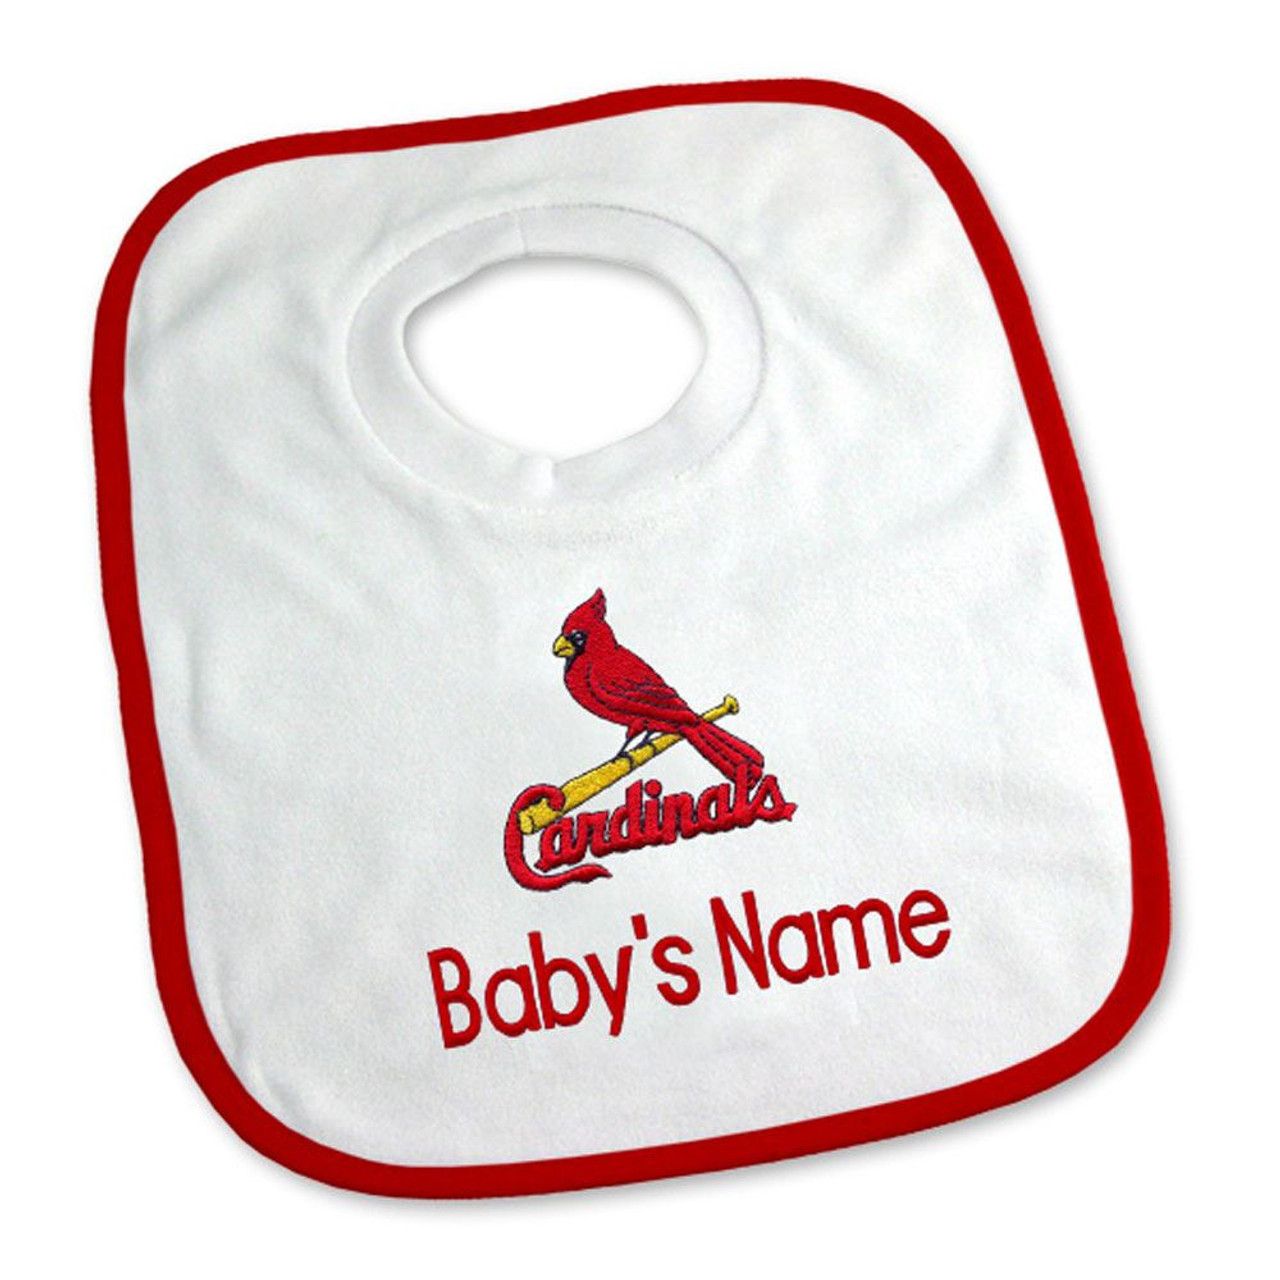 St Louis Cardinals St Louis Cardinals Baby Cardinals Baby 